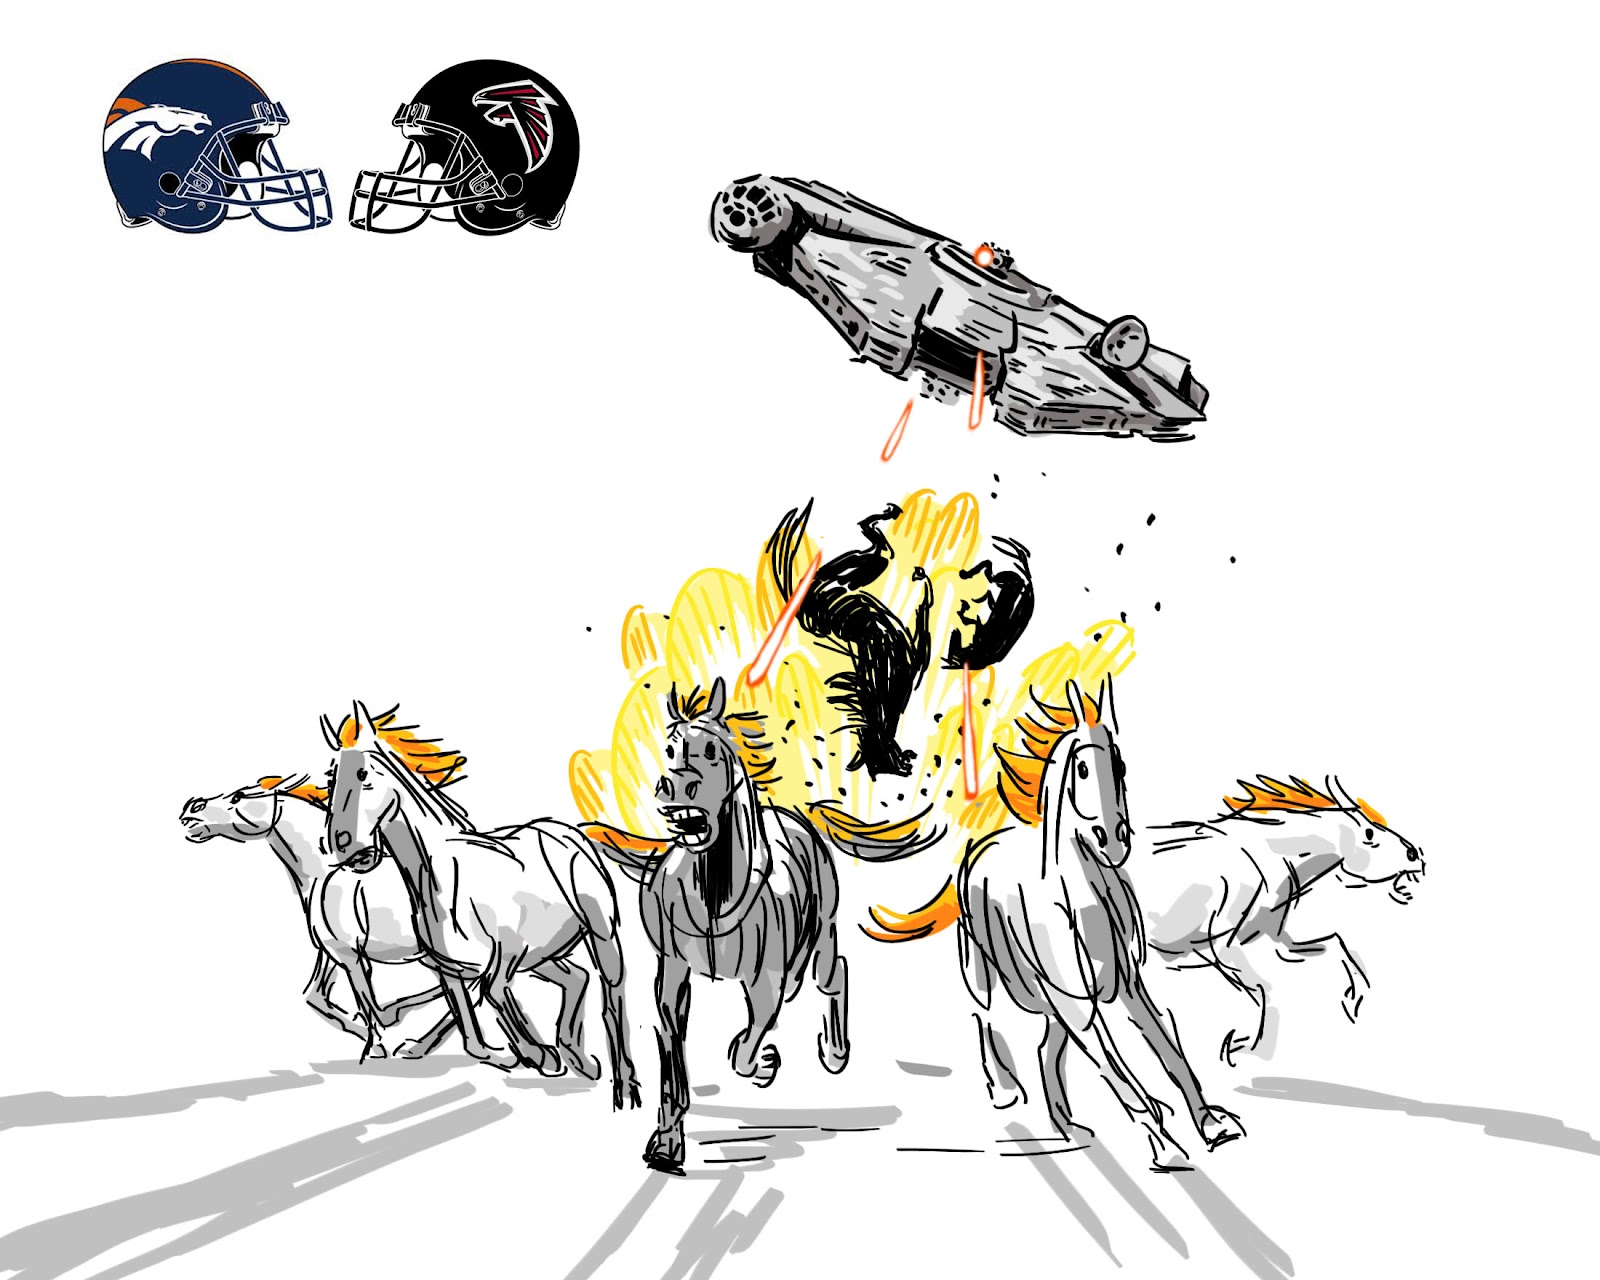 Broncos vs. Falcons